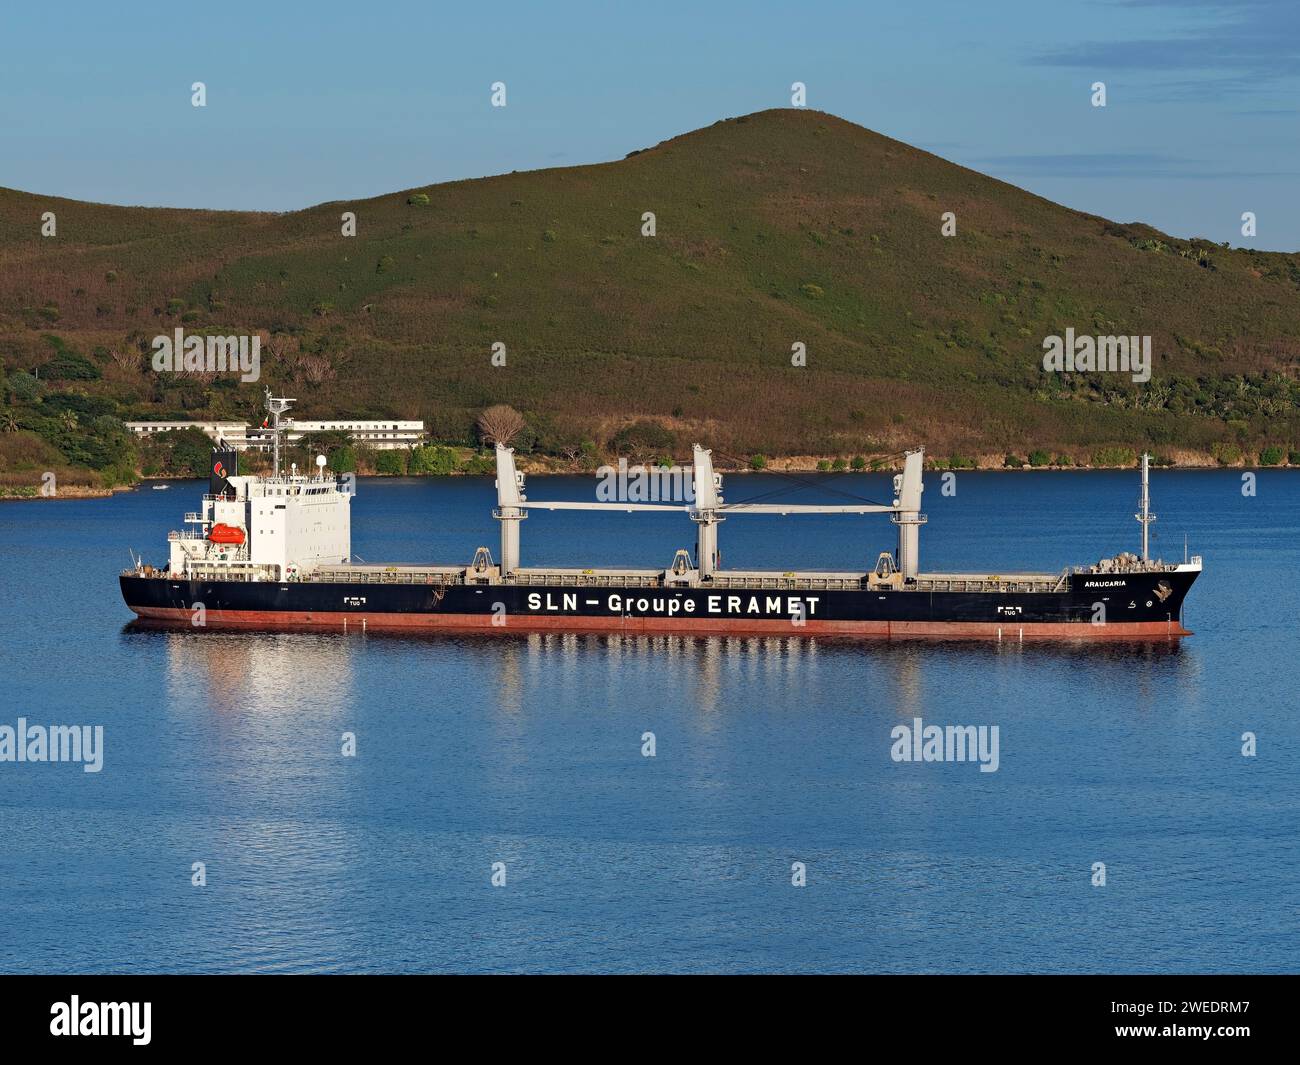 Industrie maritime / navire de transport de minerai en vrac Araucaria dans le port de Nouméa, Nouvelle-Calédonie. Banque D'Images